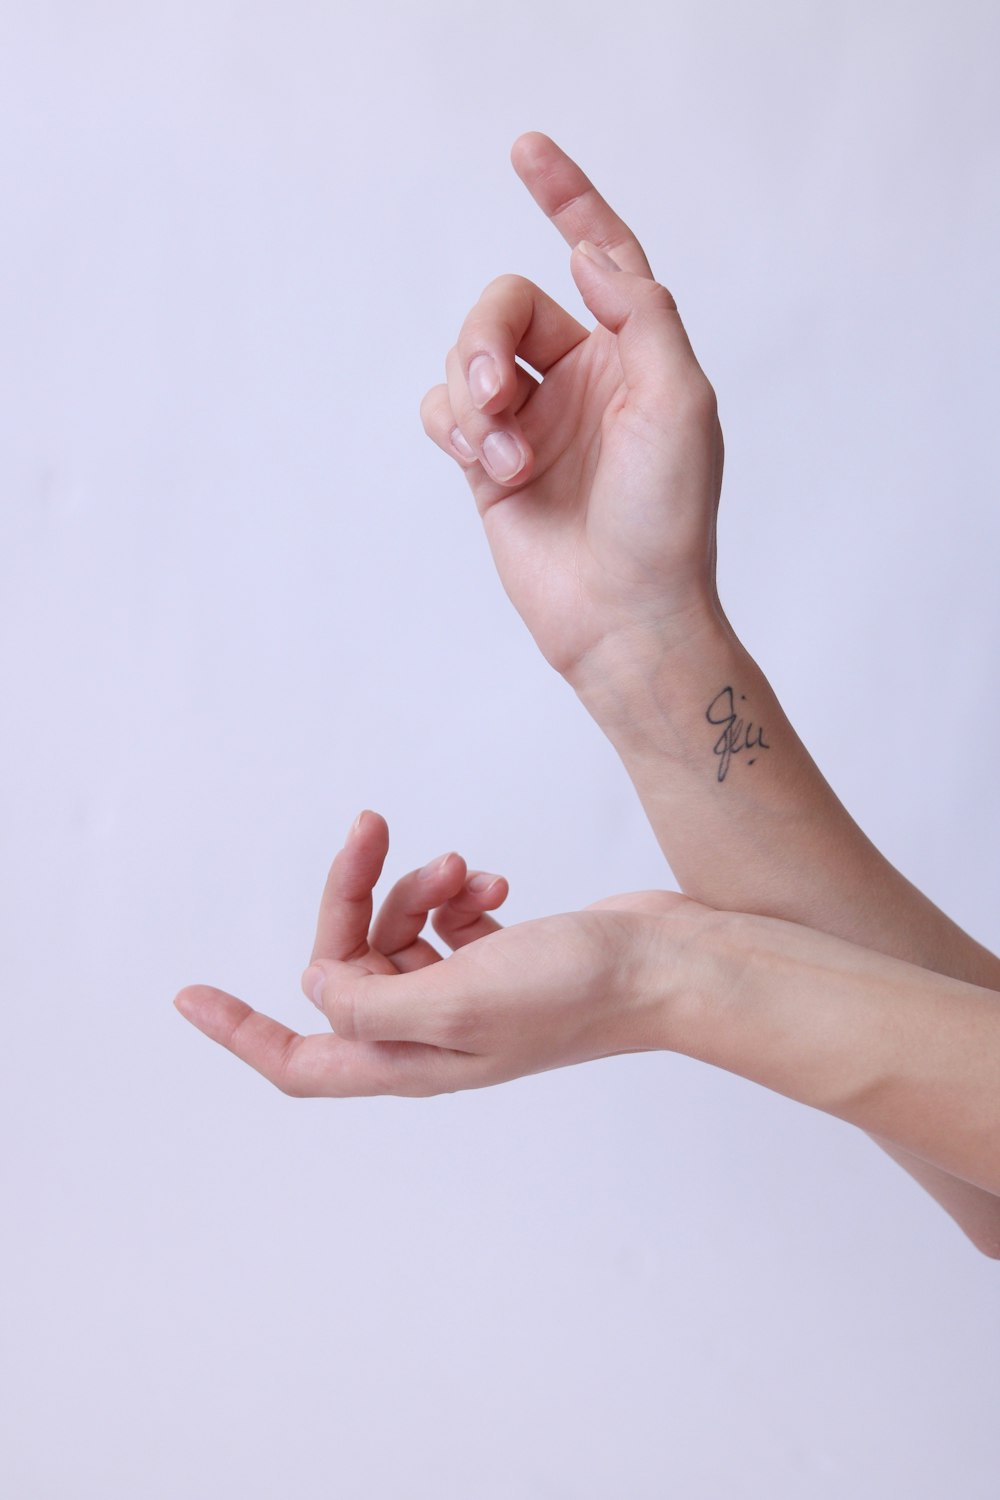 pessoa com tatuagem preta na mão direita